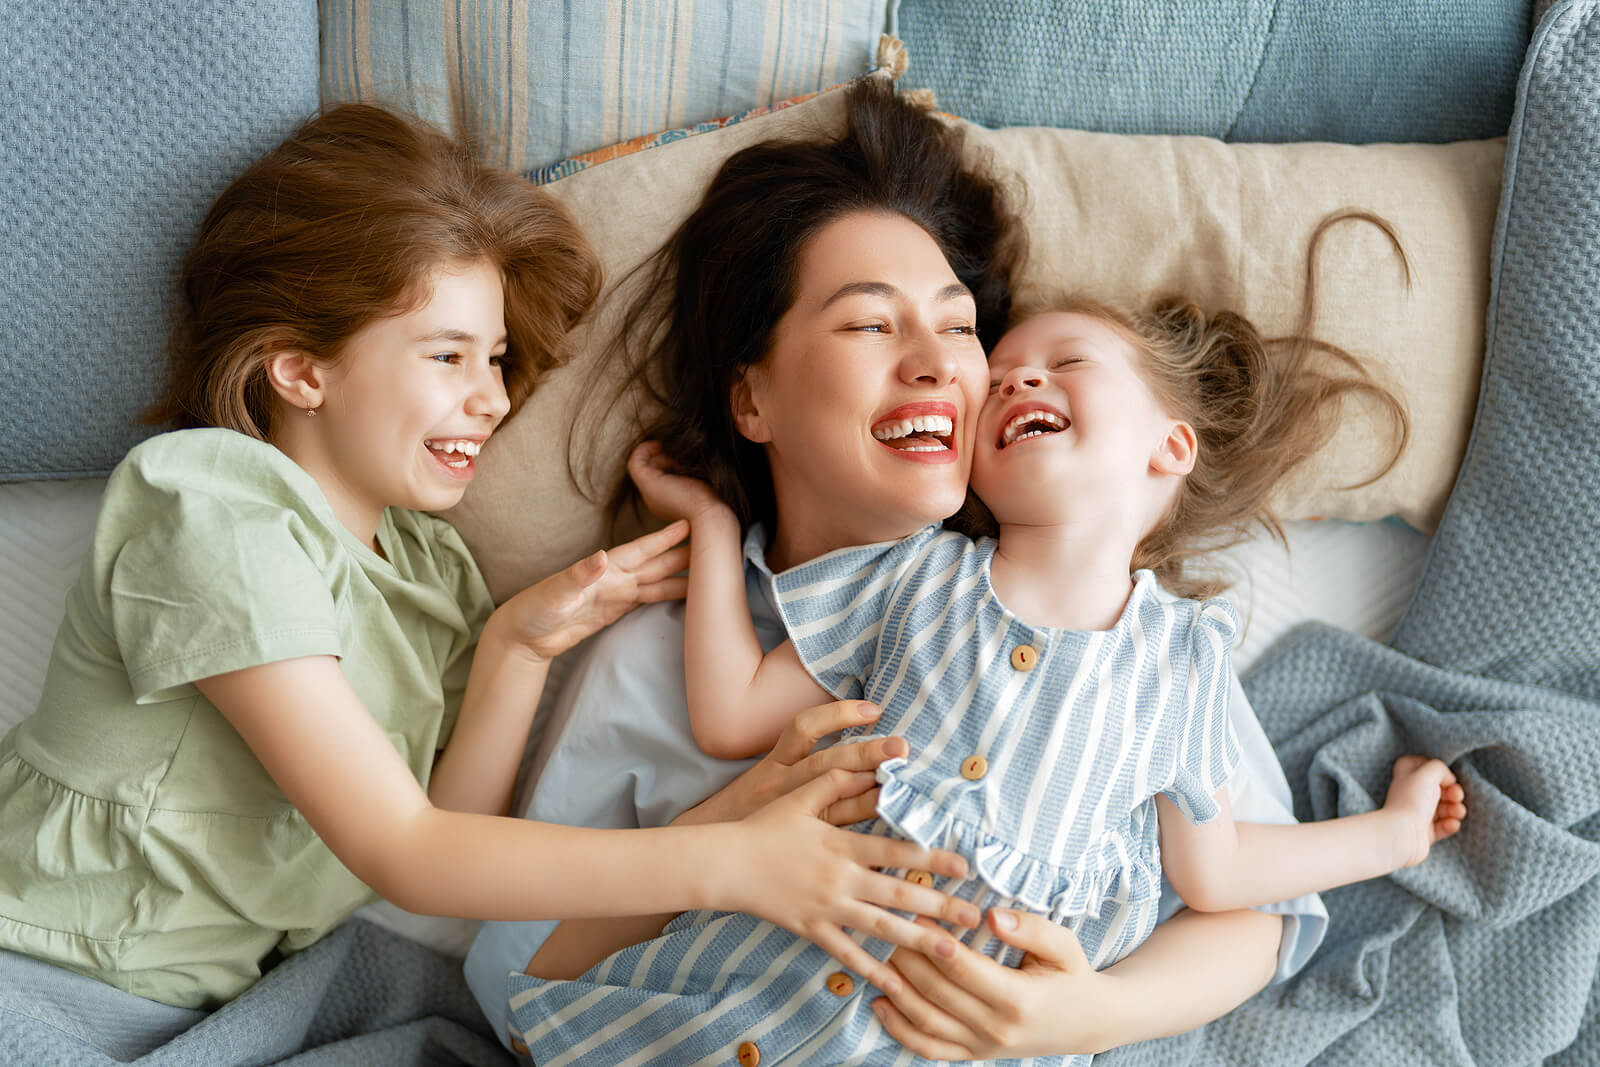 Madre disfrutando con sus hijas mientras se ríen.